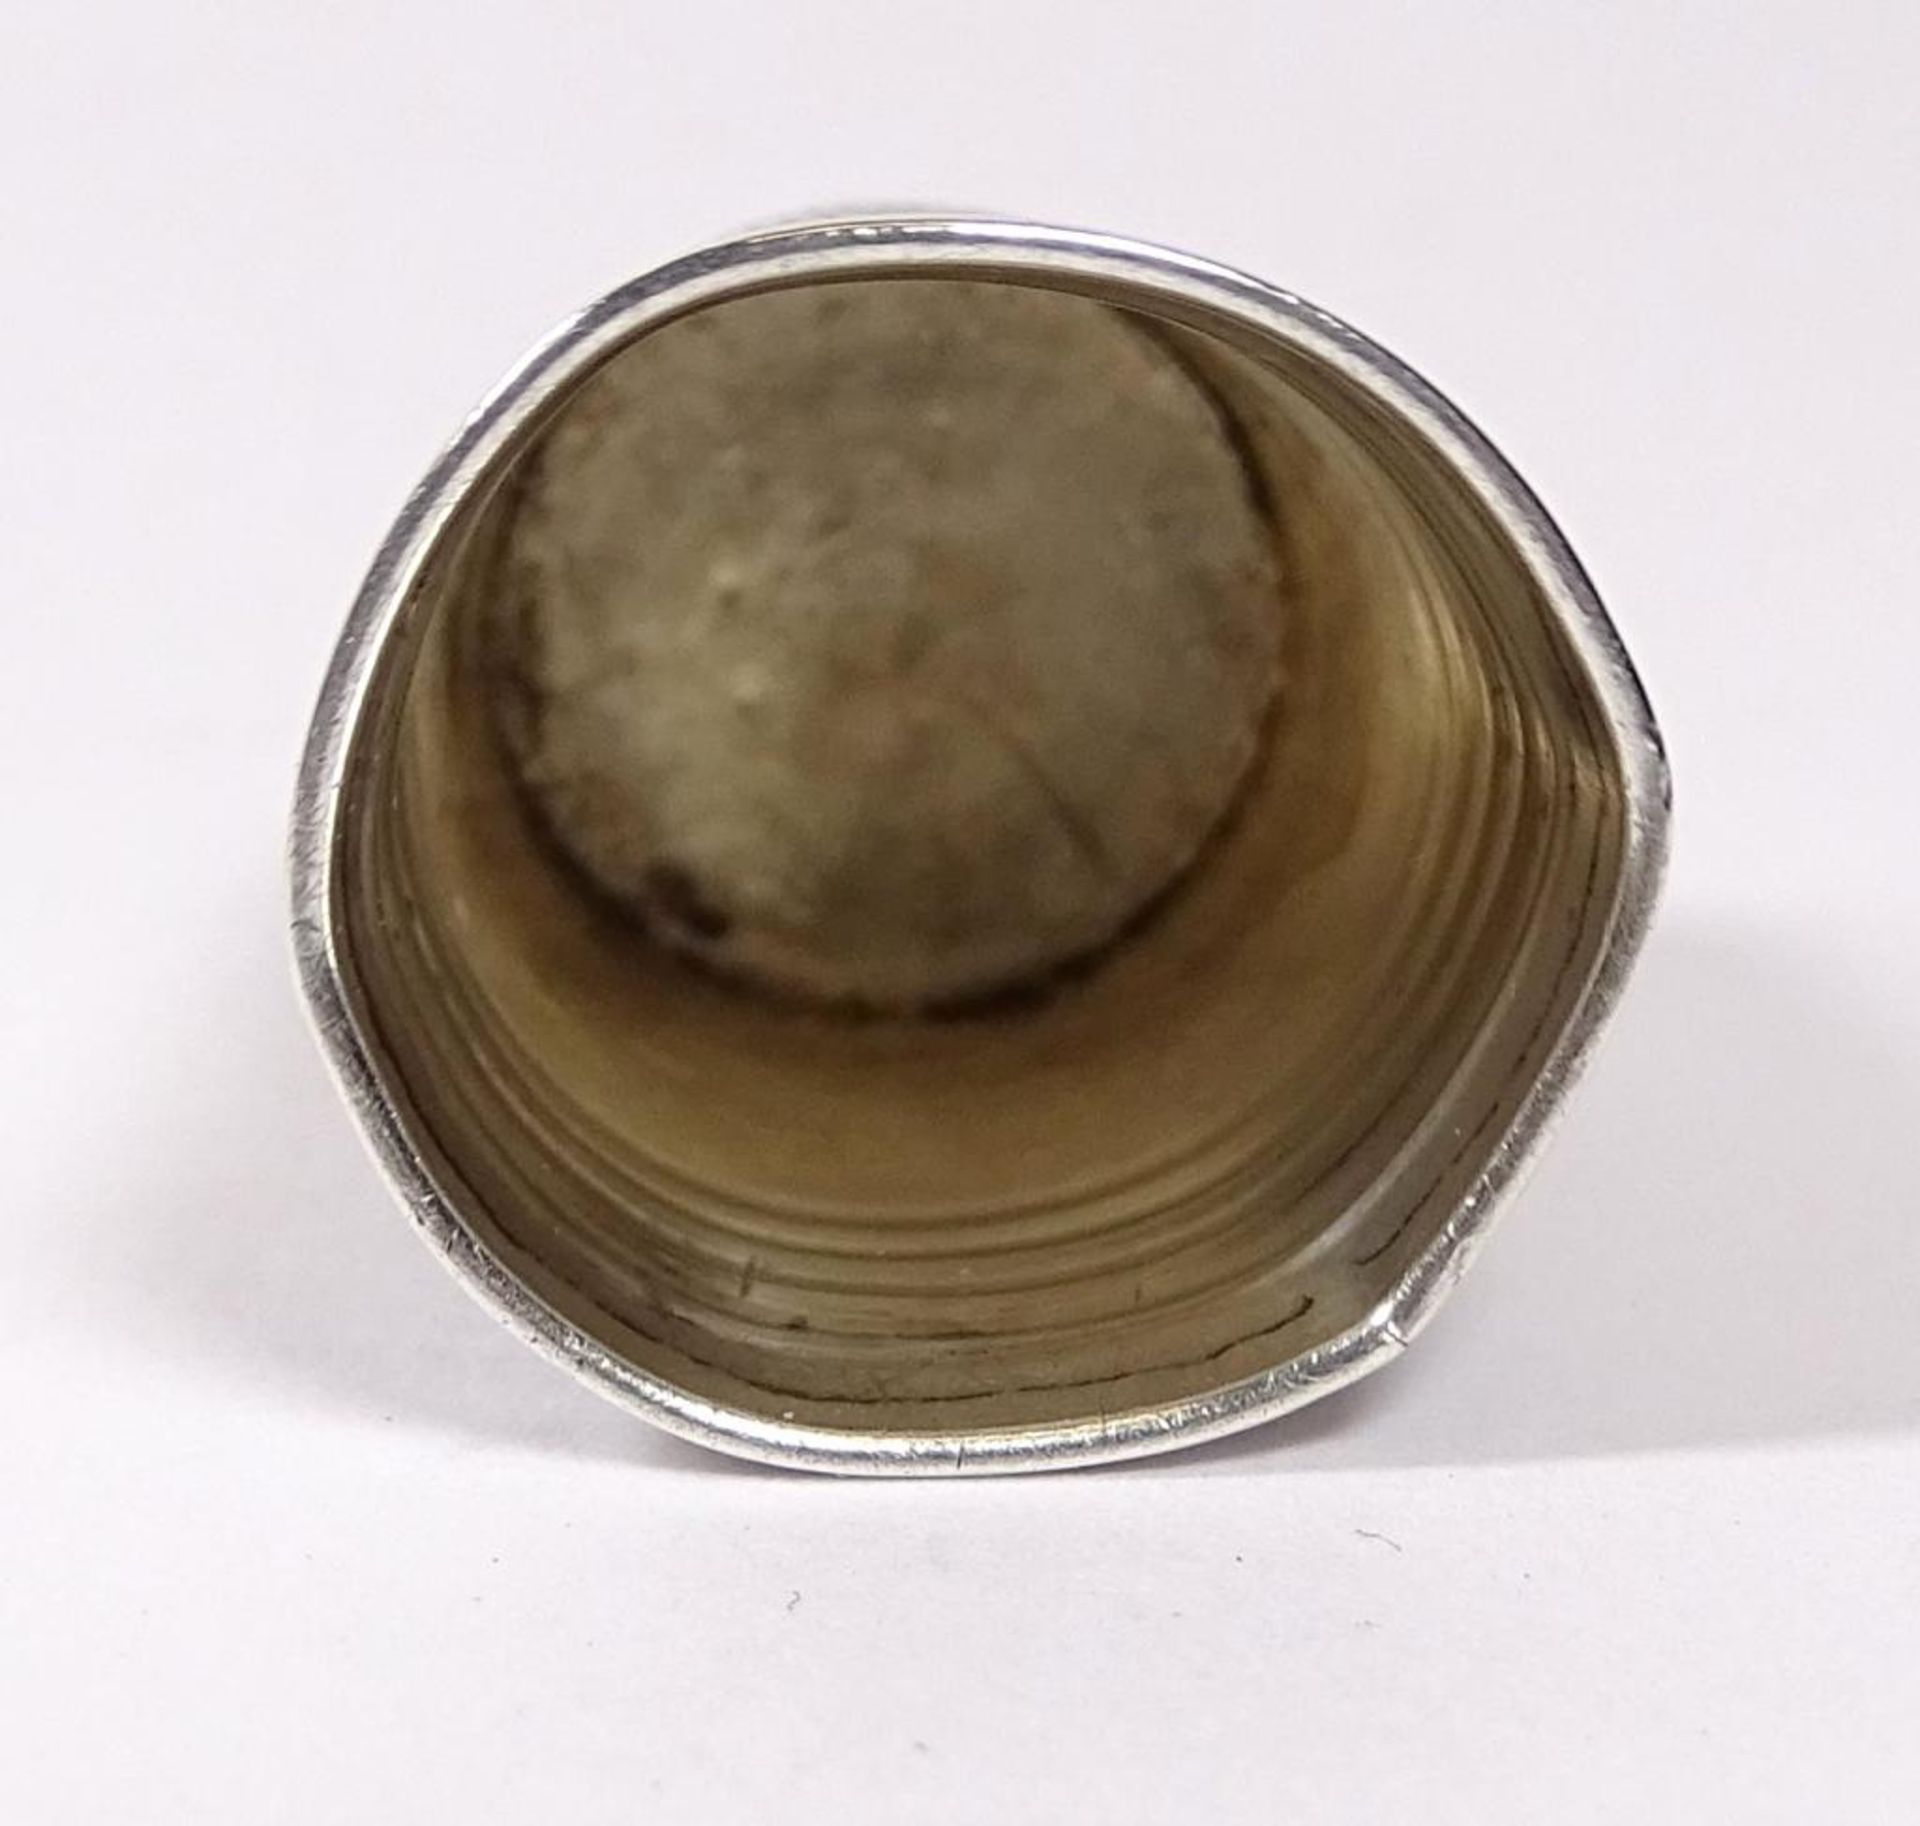 Fingerhut,Silber 800er,grüner Stein,H-22,5mm,4,4gr., Boden delli - Bild 2 aus 2